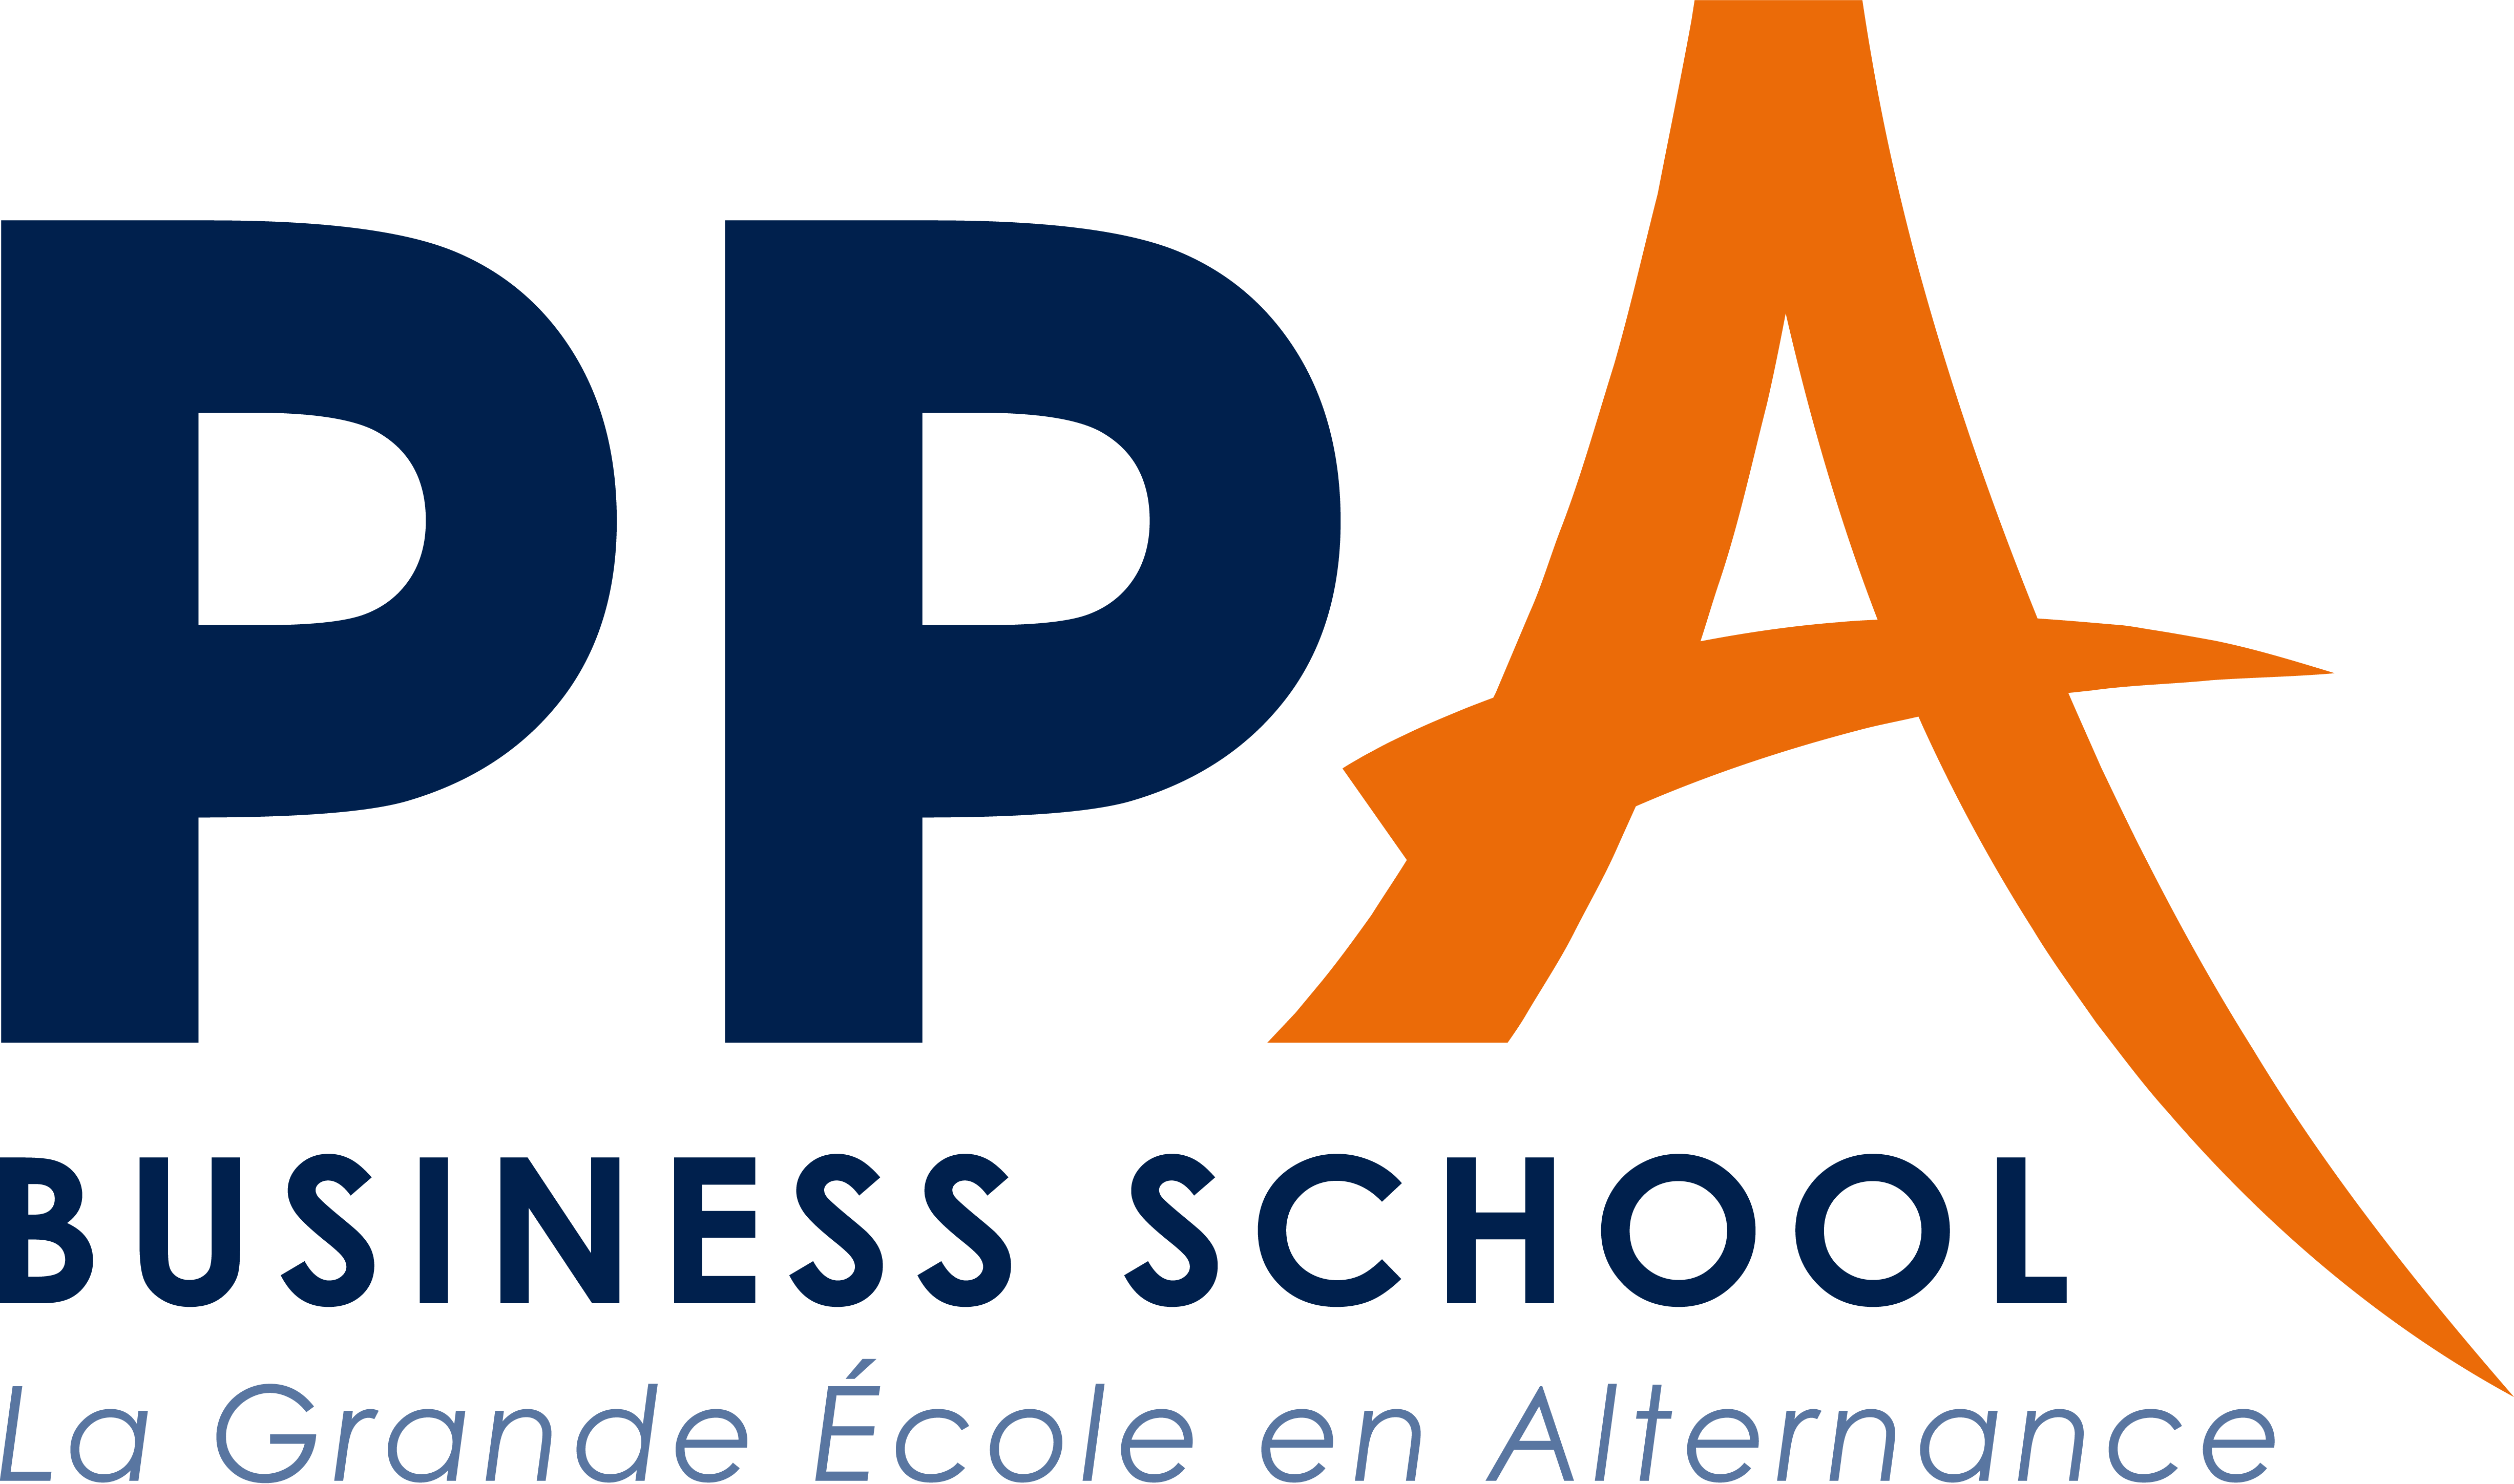 PPA, Business School